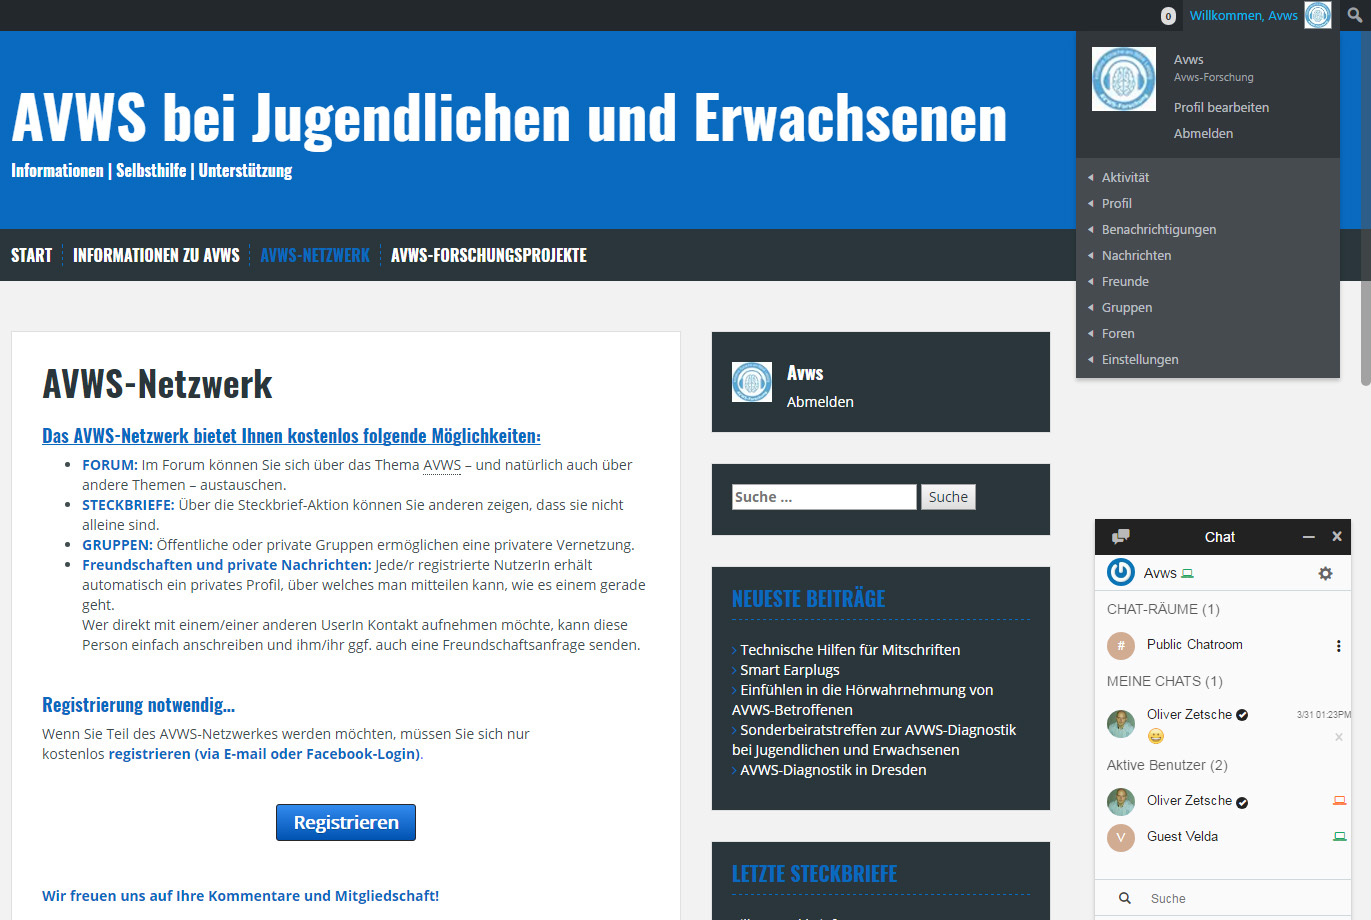 Das Bild zeigt das Netzwerkportal www.avws-bei-jugendlichen.de. Es ist die Startseite abgedruckt, auf der die Registrierung erklärt ist. Ein Chat-Fenster ist auf diesem Bild ebenfalls zu sehen. Das Portal ermöglicht es Jugendlichen und Erwachsenen mit einer AVWS sich zu vernetzen.